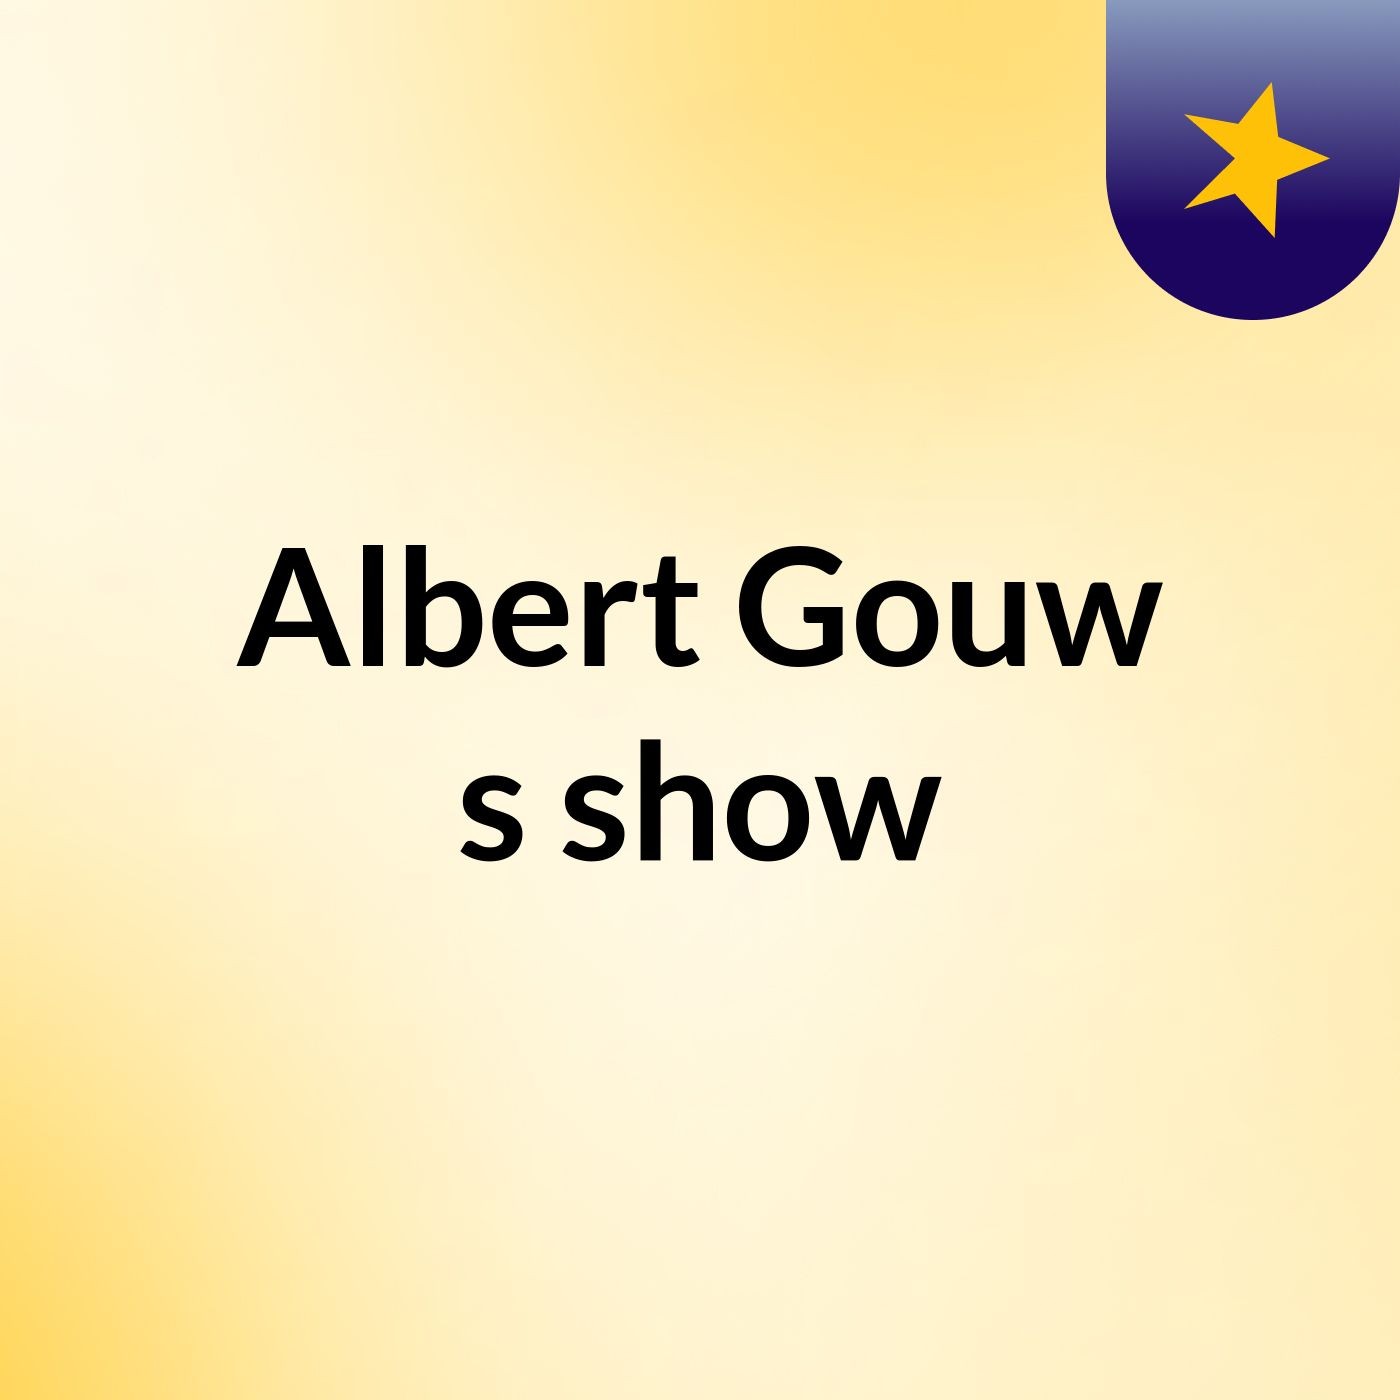 Albert Gouw's show